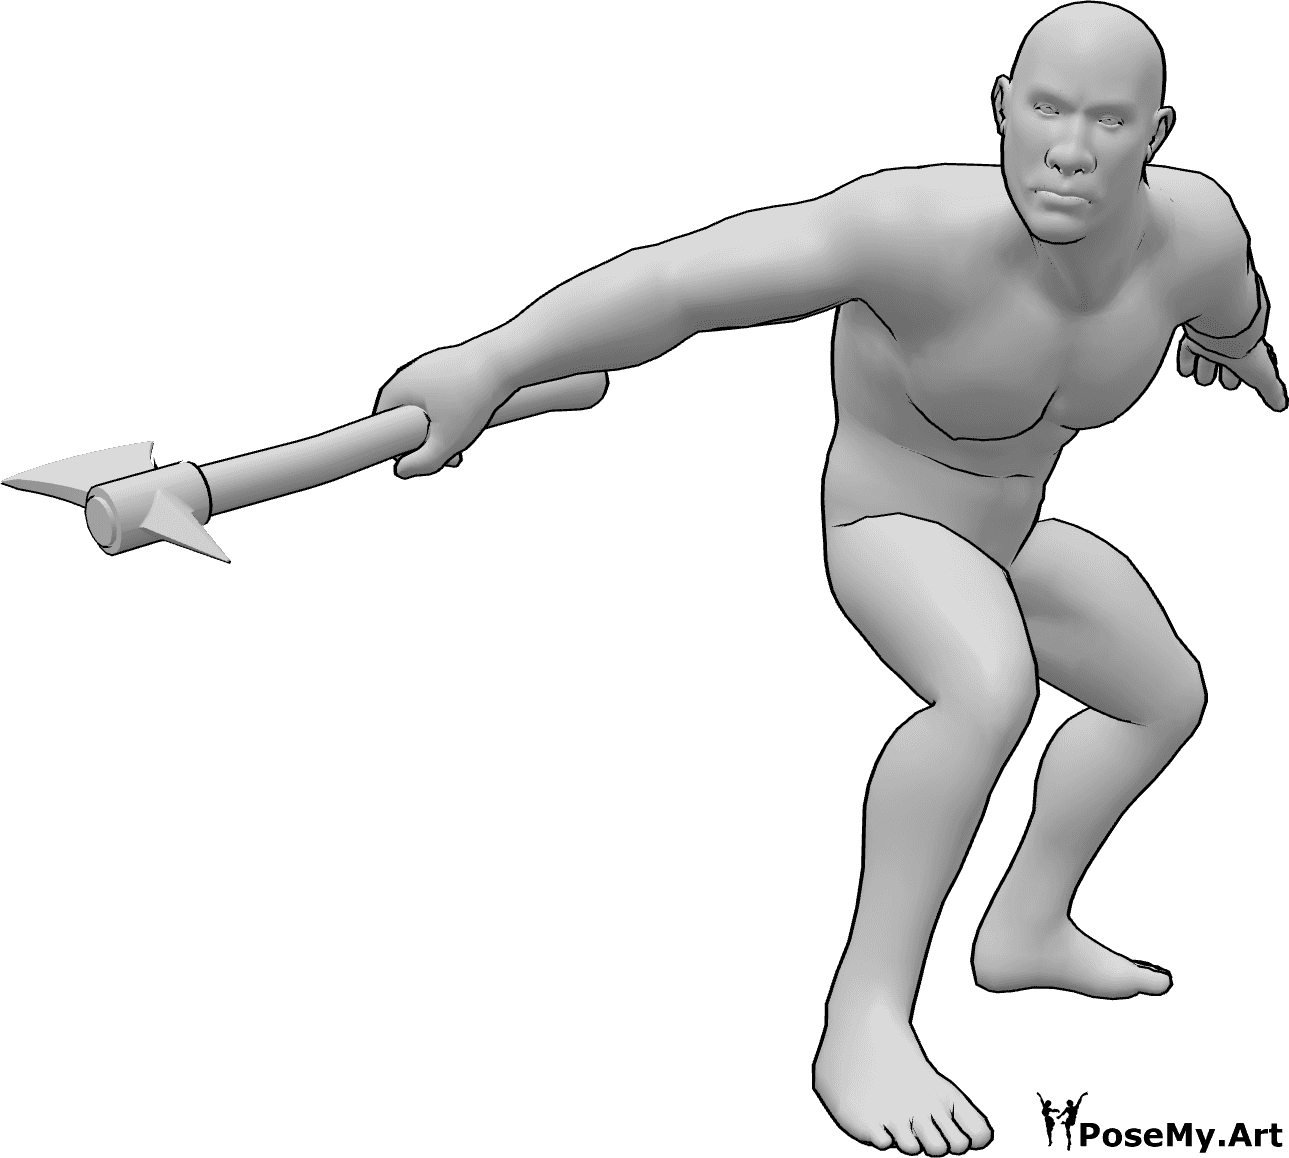 Referência de poses- Pose de machado de homem bruto - Homem bruto pronto a atacar com uma pose de machado